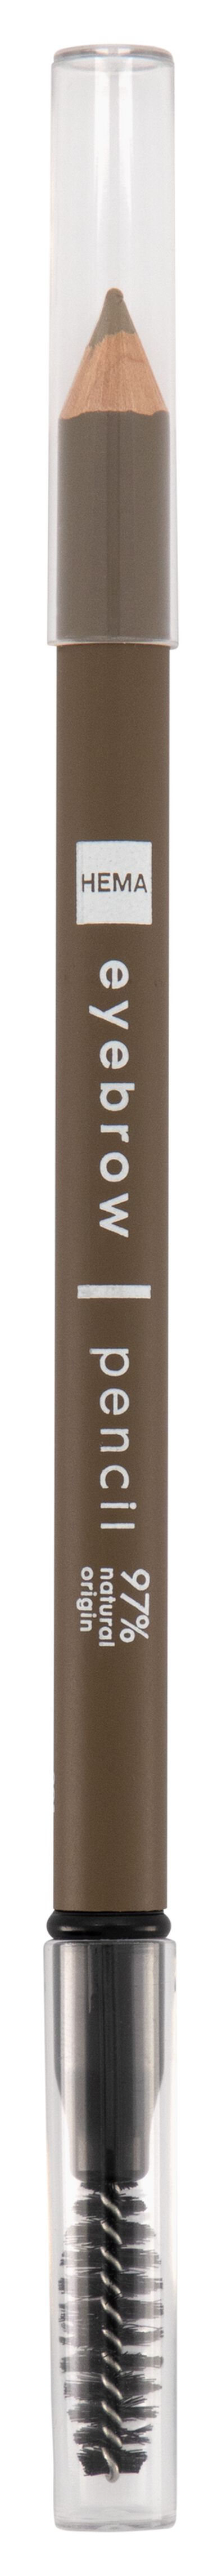 crayon sourcils marron - 11210285 - HEMA